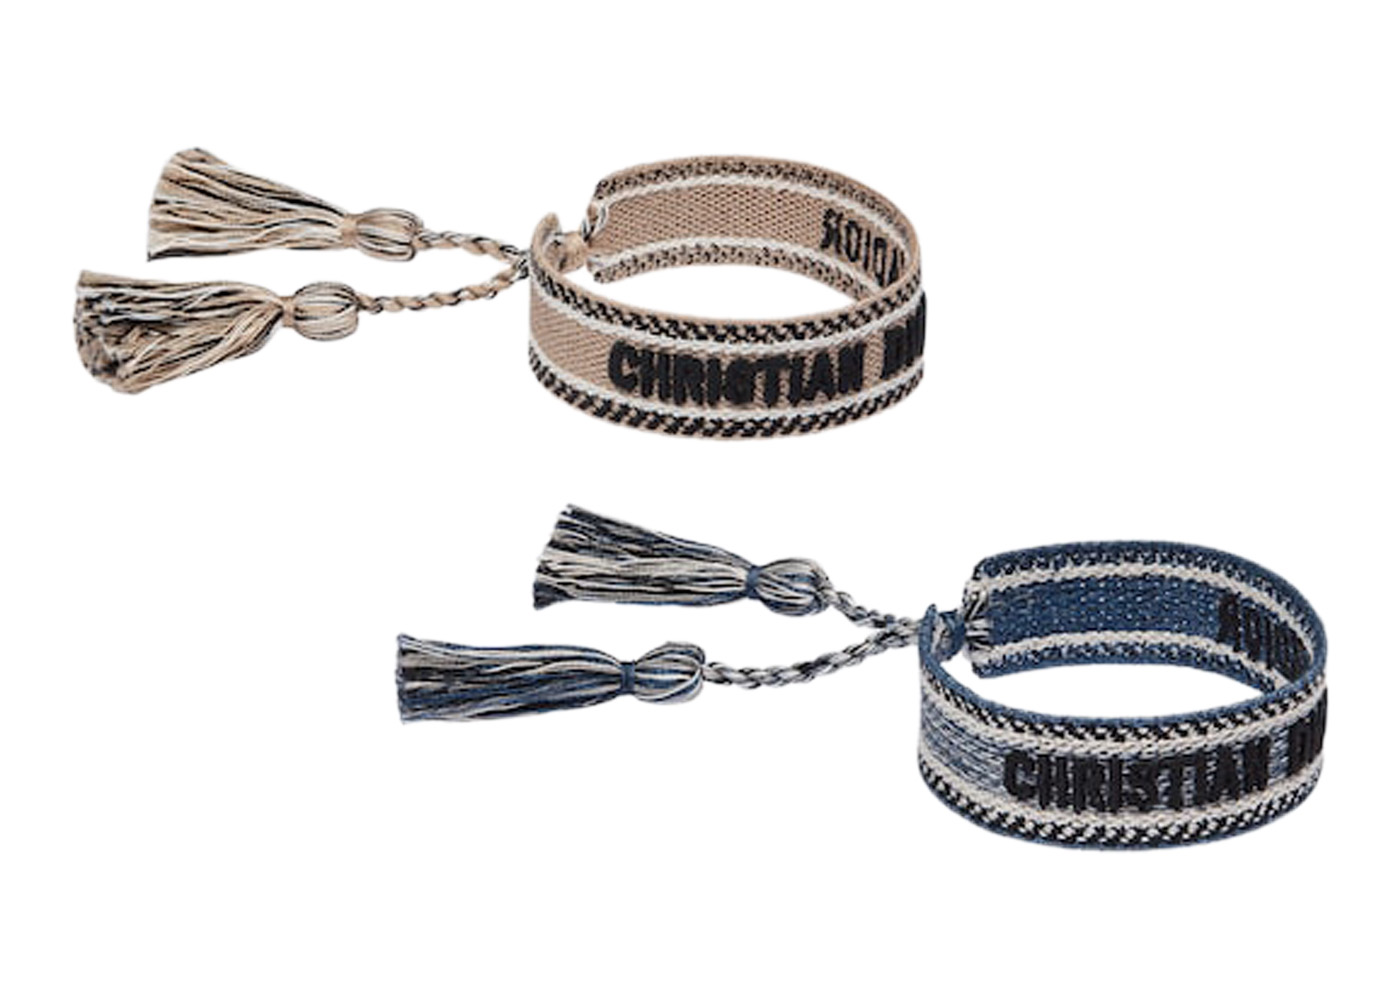 20 Best Designer Bracelets to Shop  Chic Bangles and Bracelets for 2023